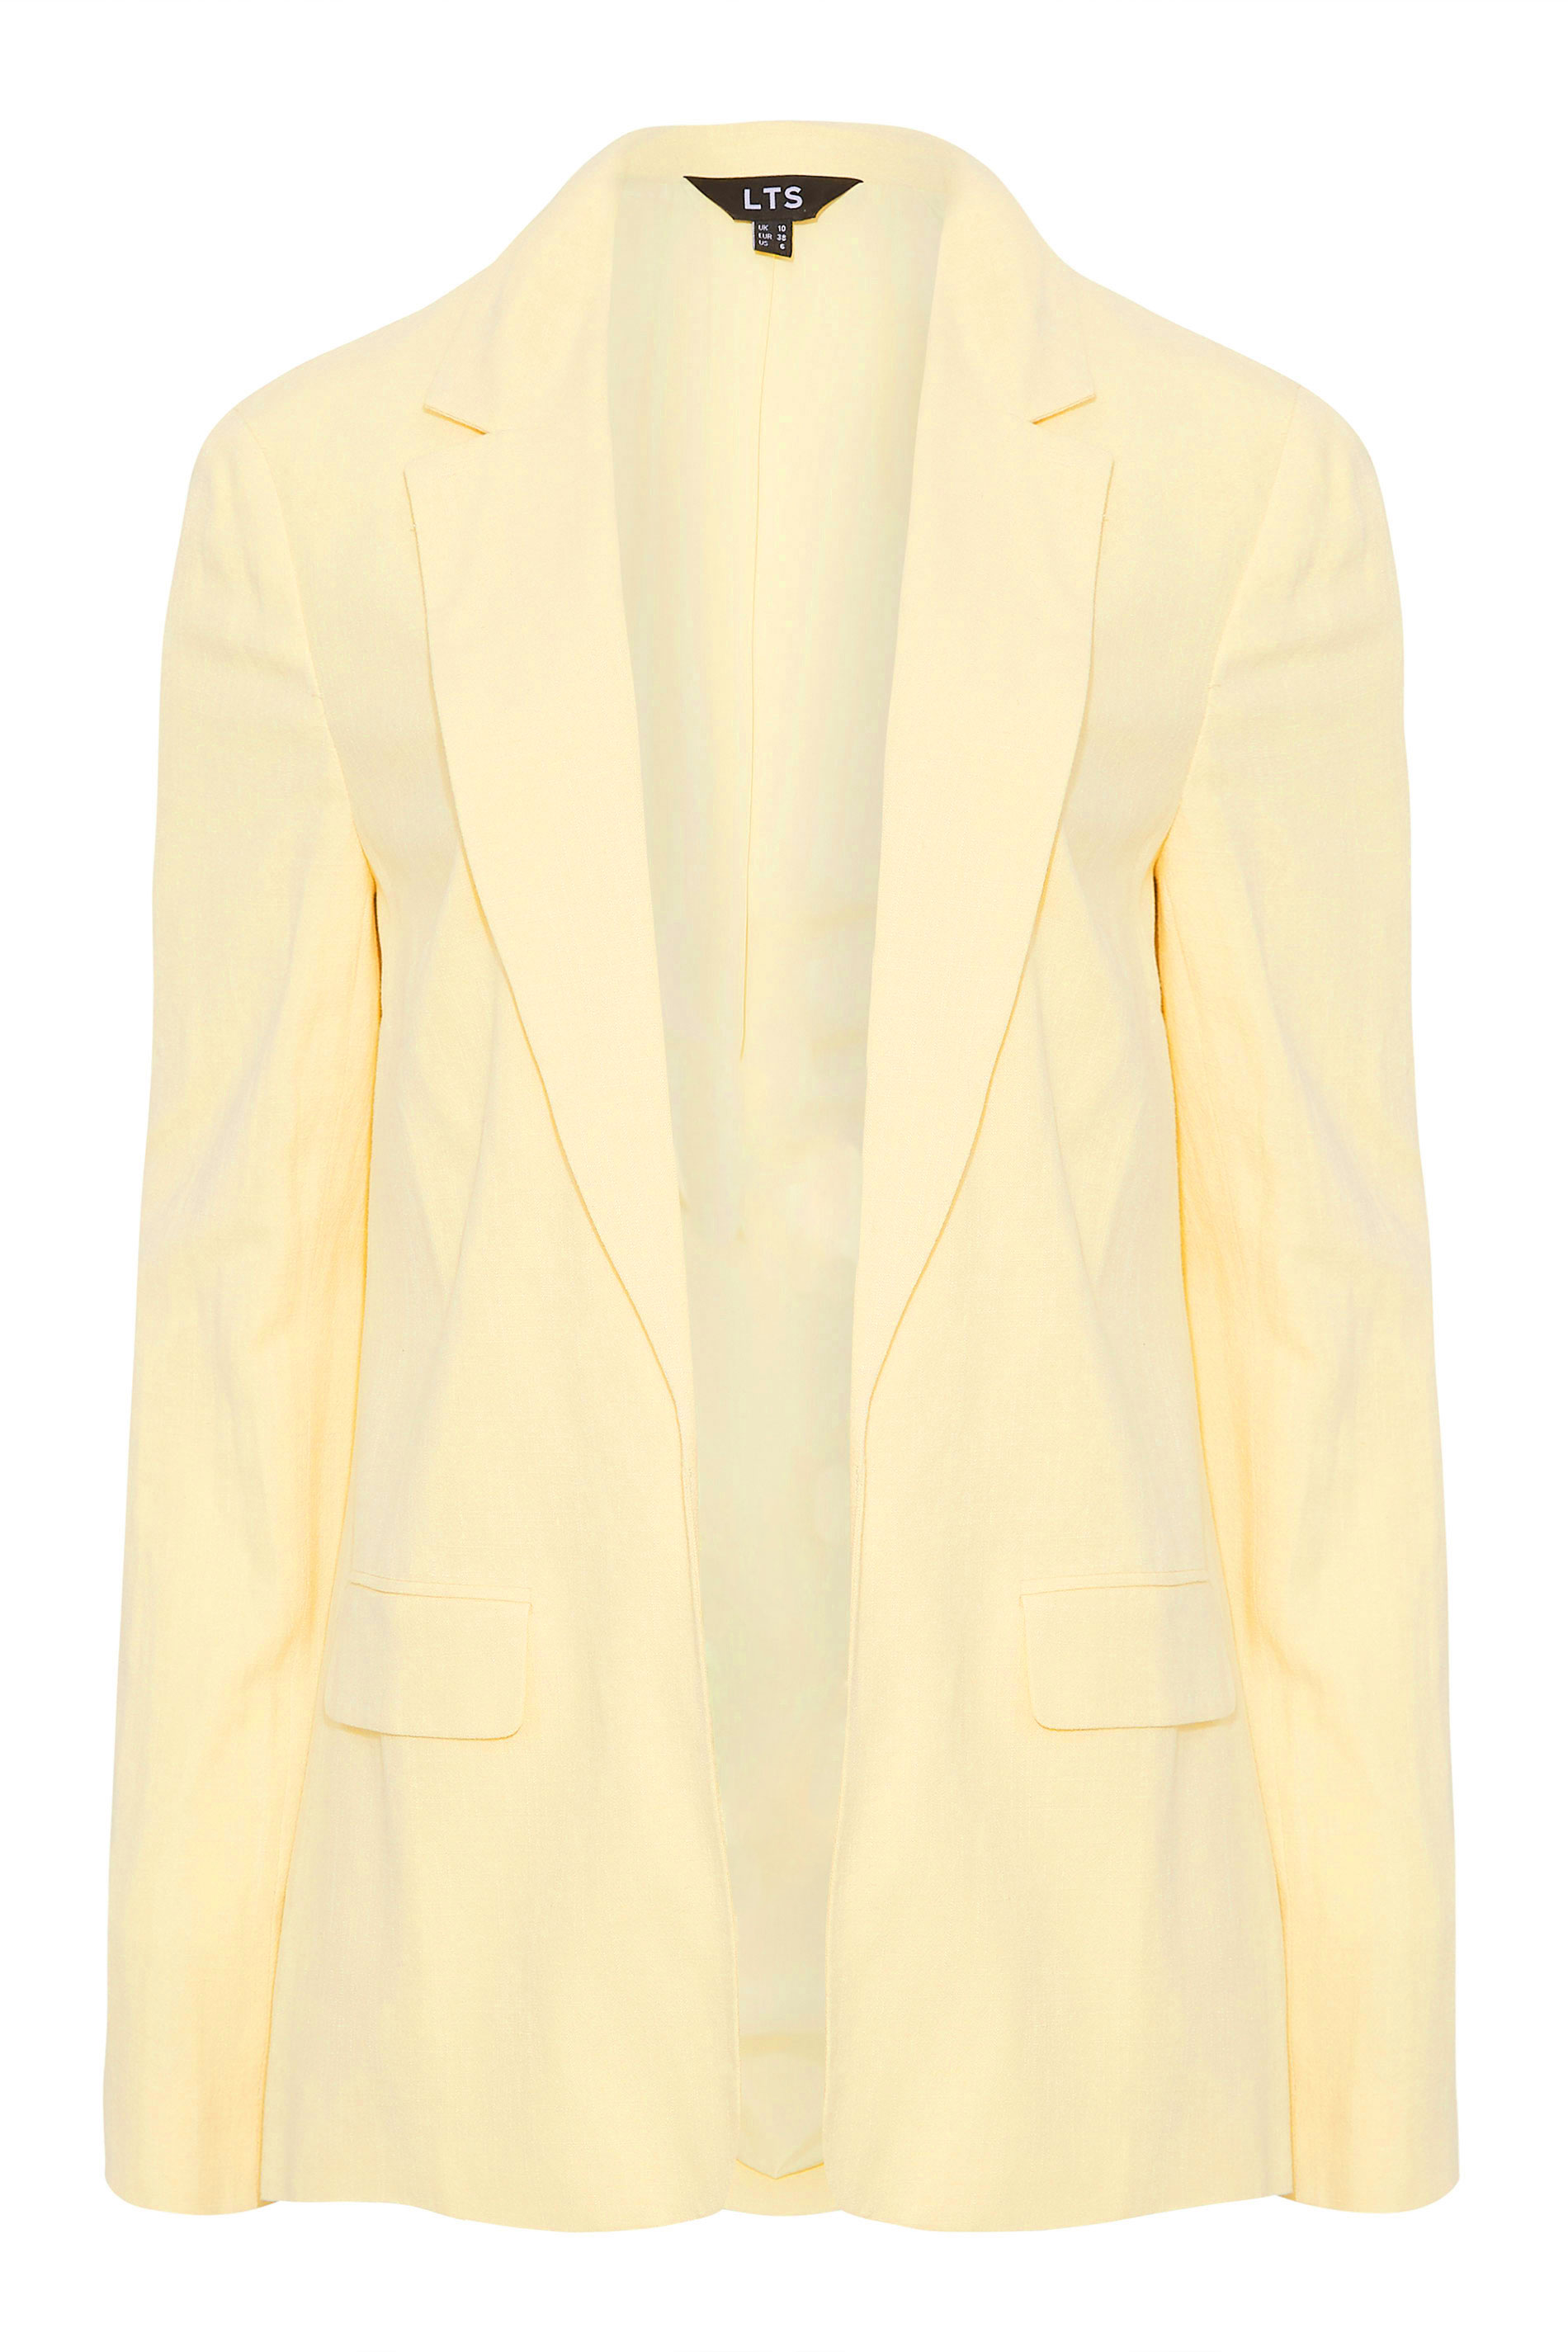 LTS Tall Women's Lemon Yellow Linen Blazer | Long Tall Sally  2